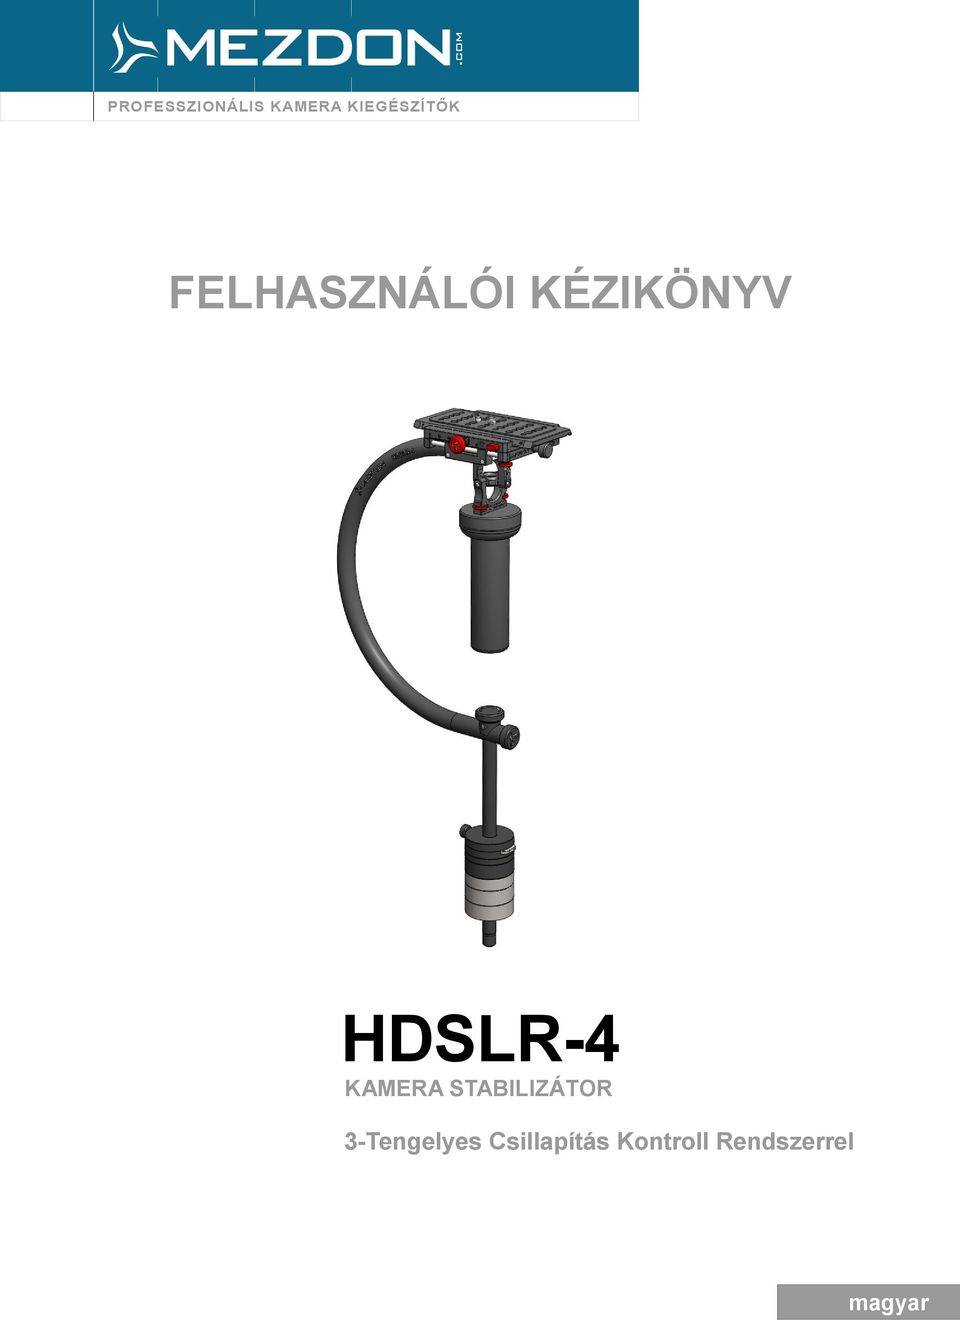 HDSLR-4 KAMERA STABILIZÁTOR - PDF Ingyenes letöltés